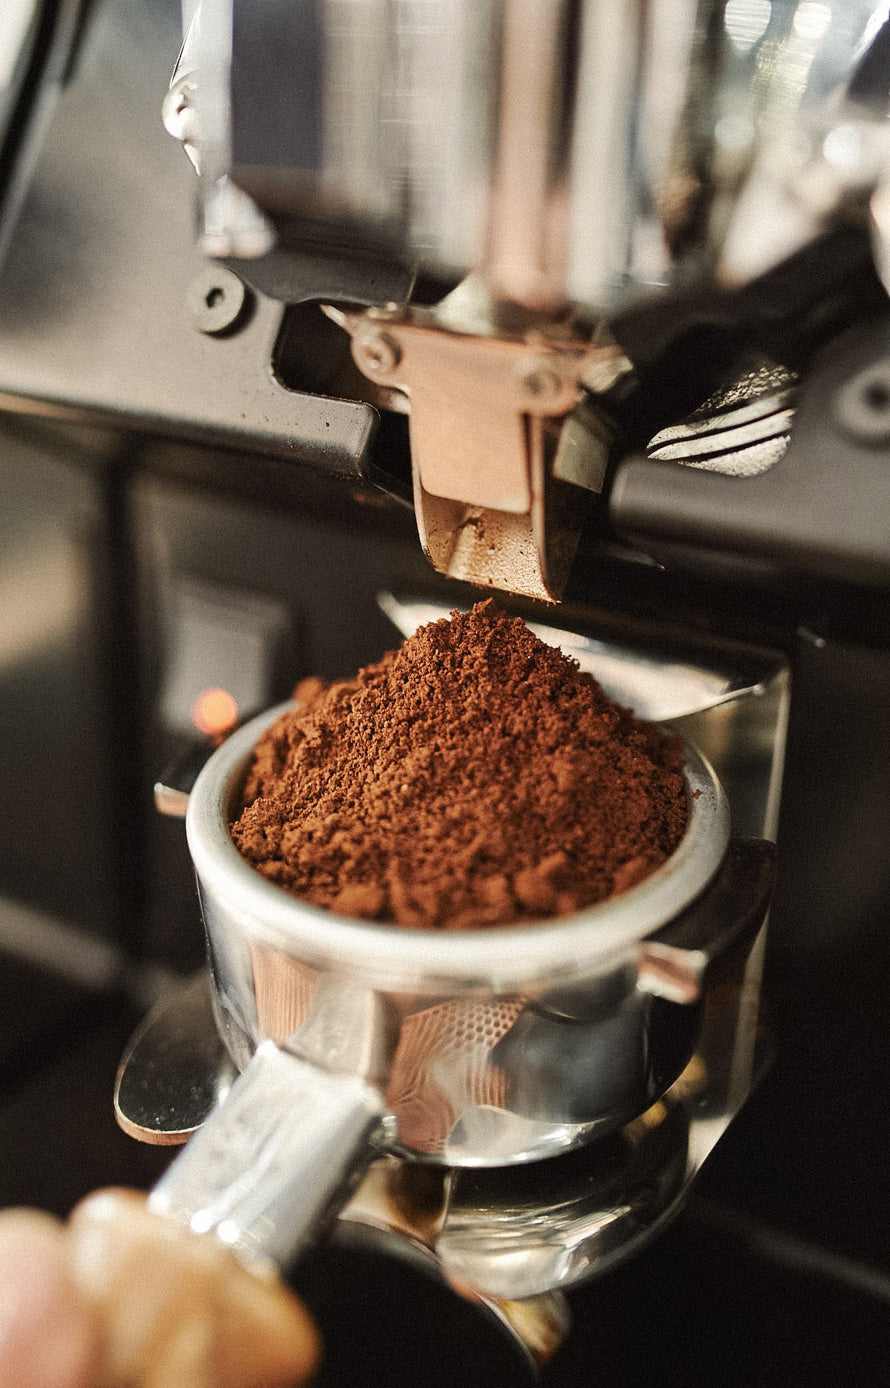 mahlgrad-siebtraeger-wildkaffee-kaffee-espresso-zubereitung